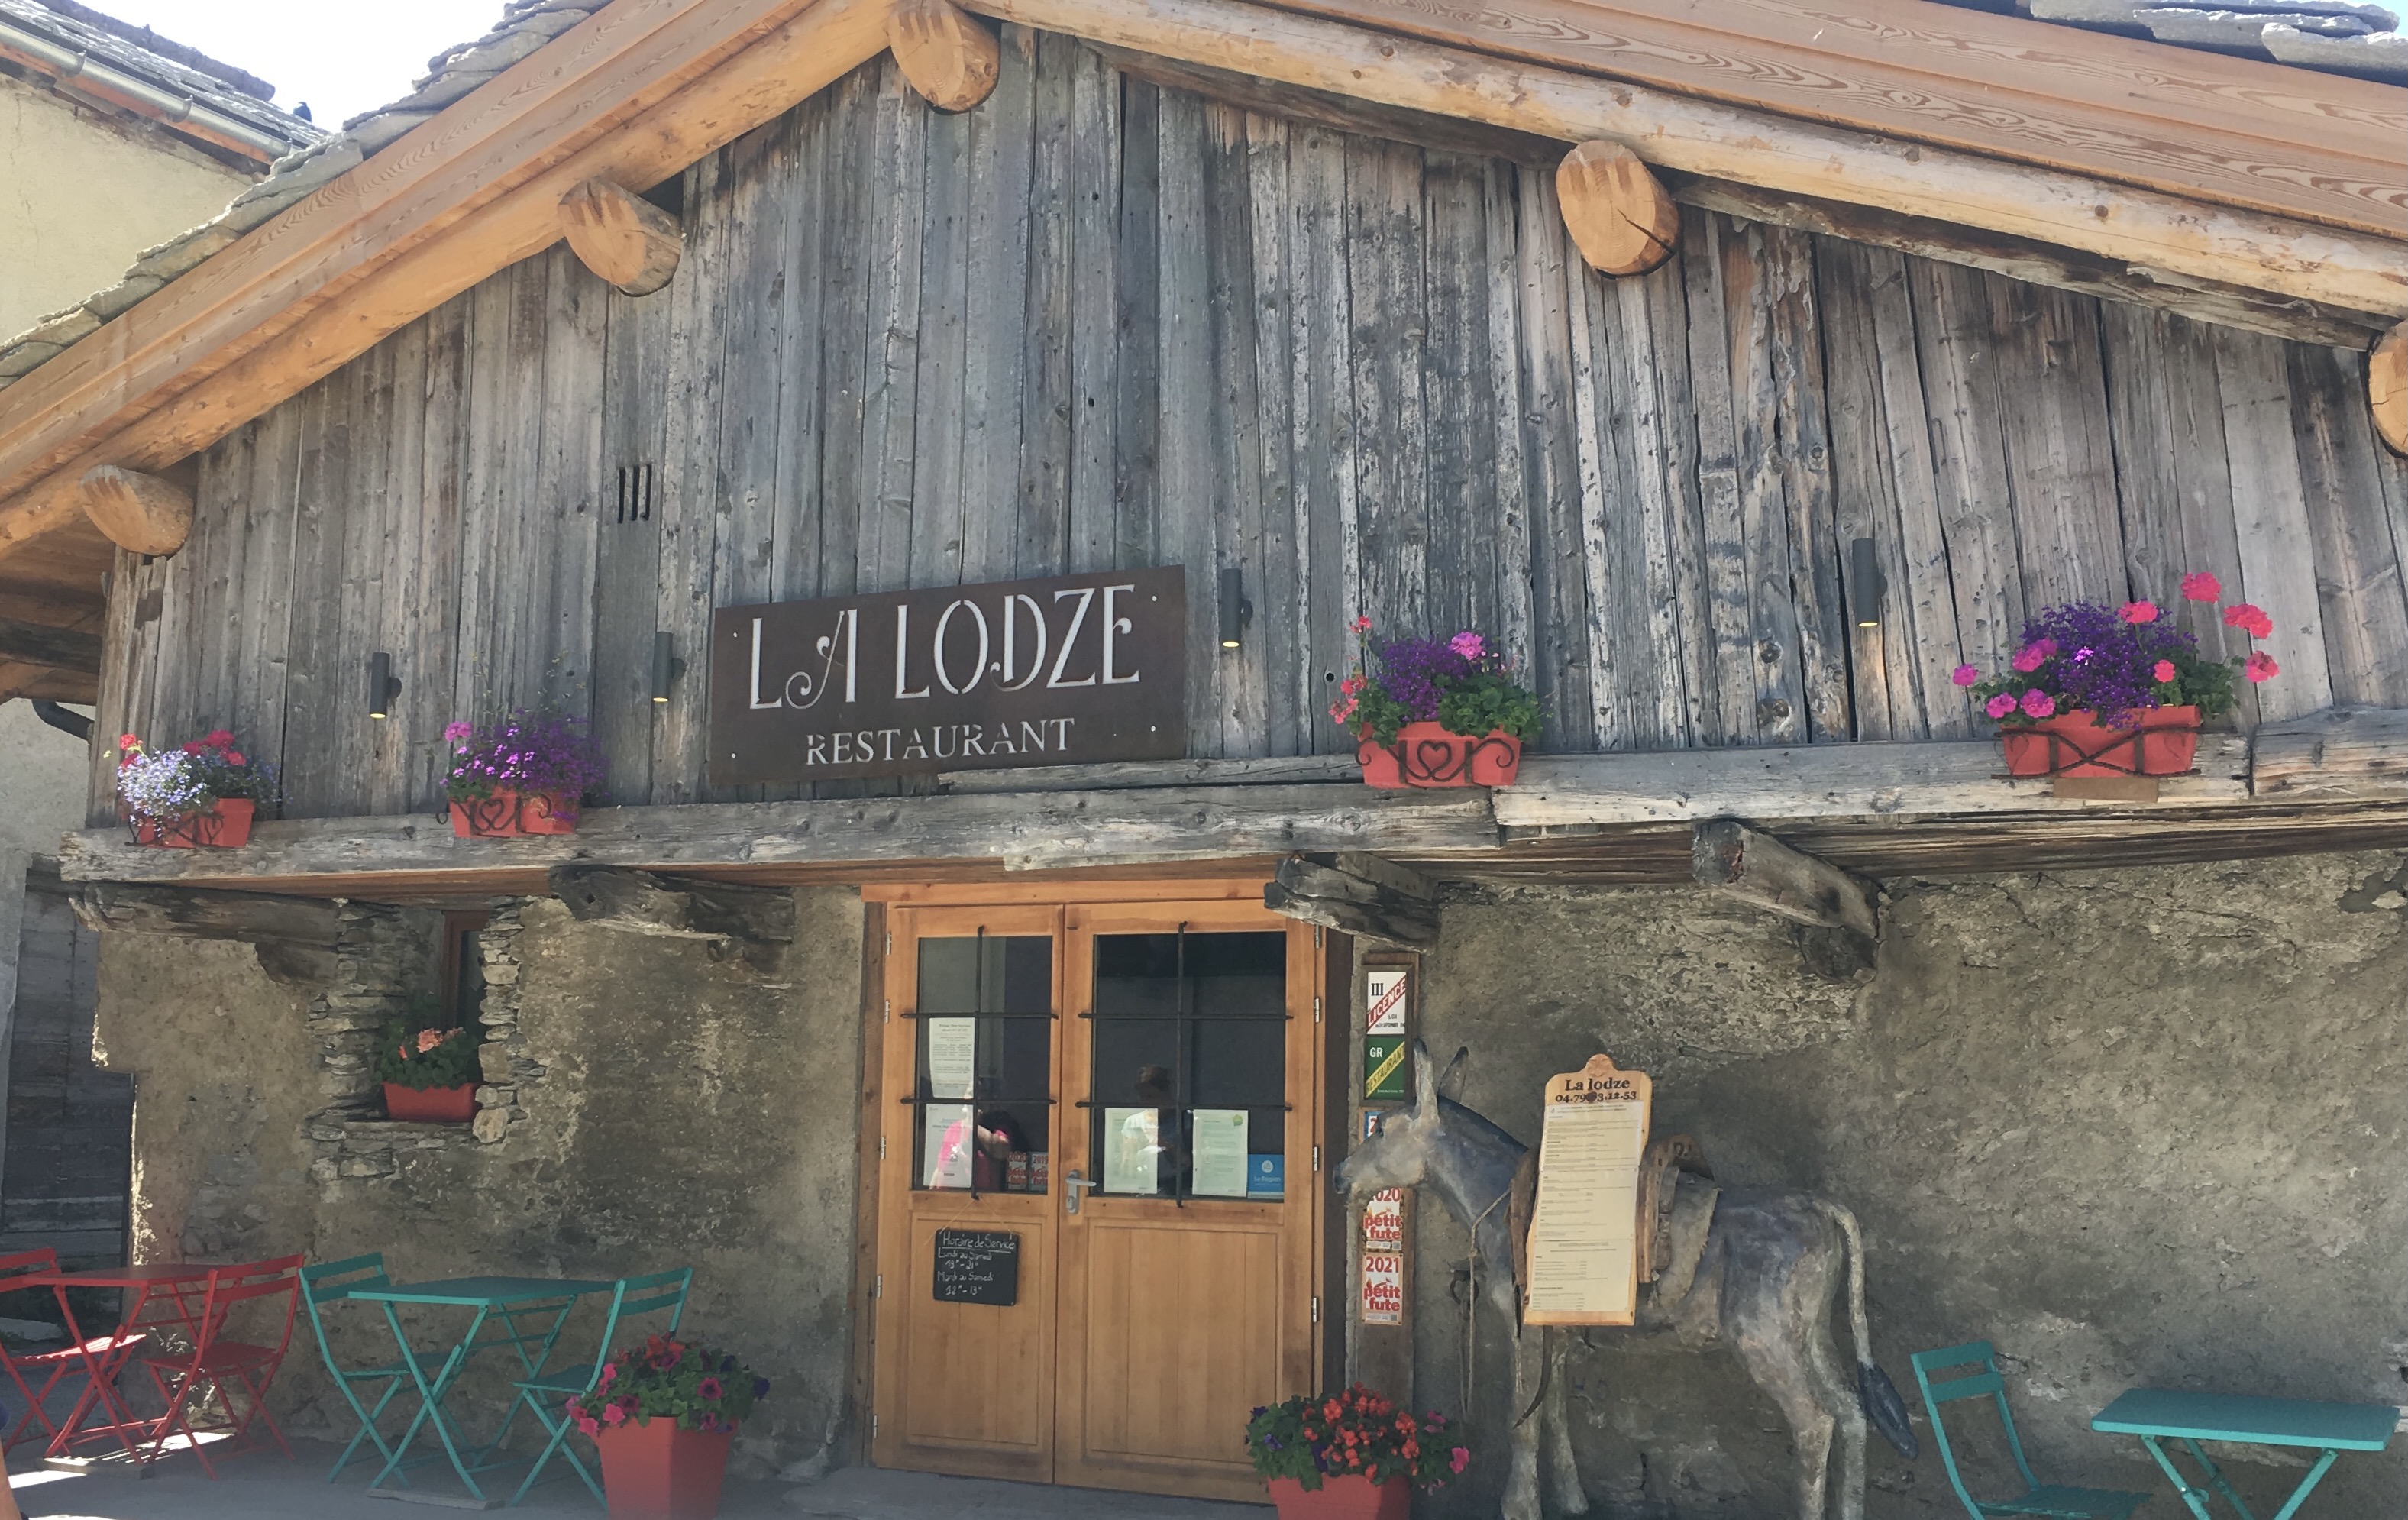 La Lodze Restaurant - Ph Silvana Delfuoco